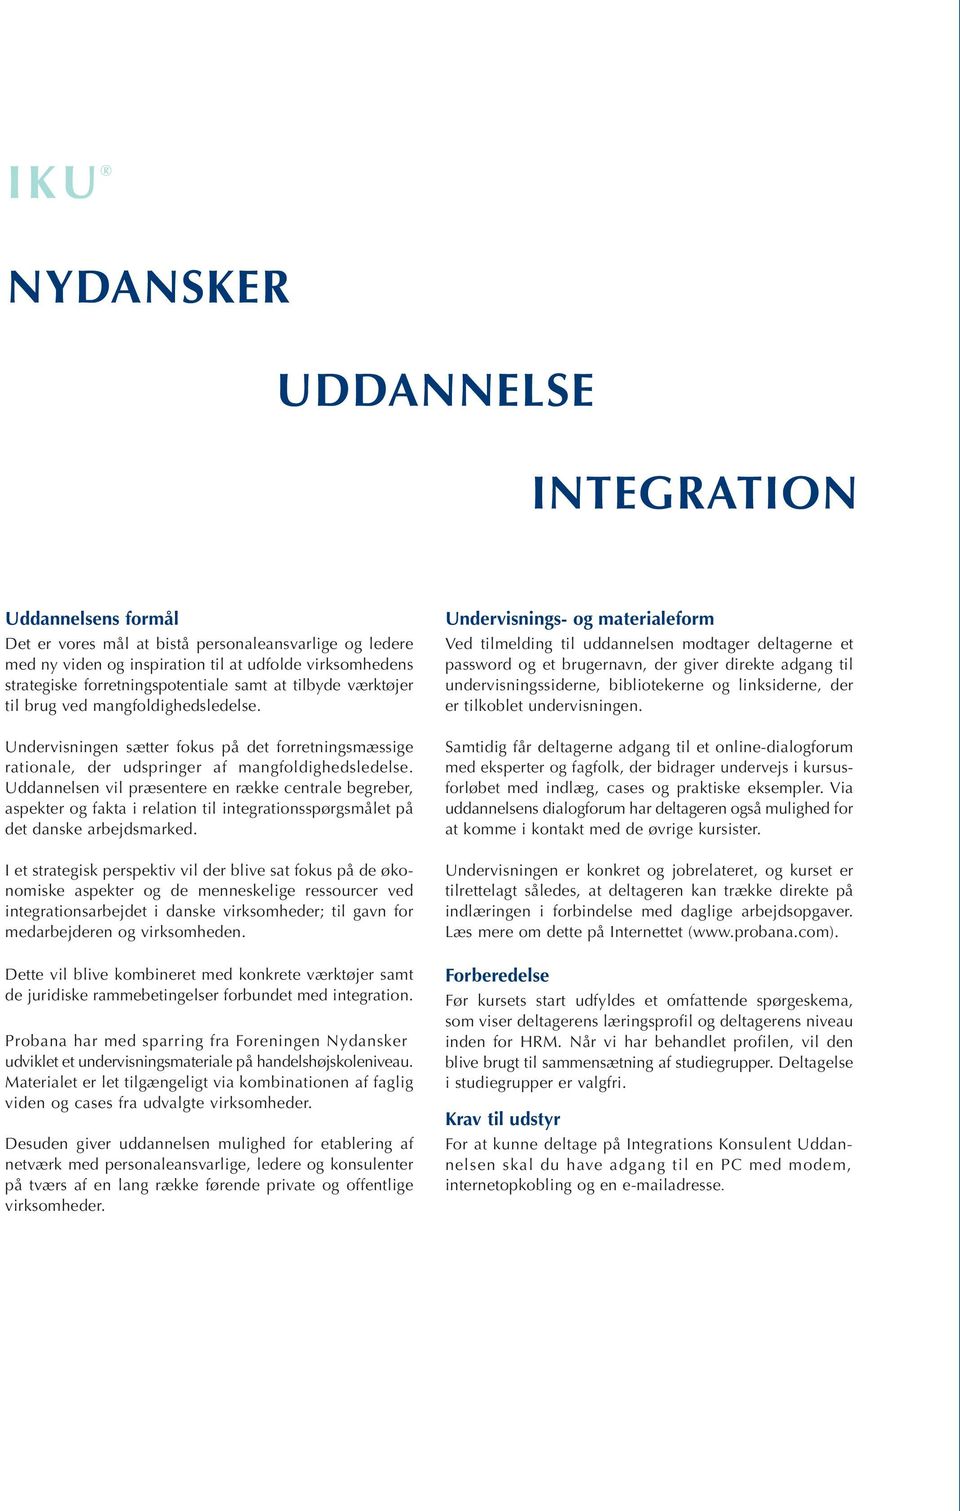 Uddannelsen vil præsentere en række centrale begreber, aspekter og fakta i relation til integrationsspørgsmålet på det danske arbejdsmarked.